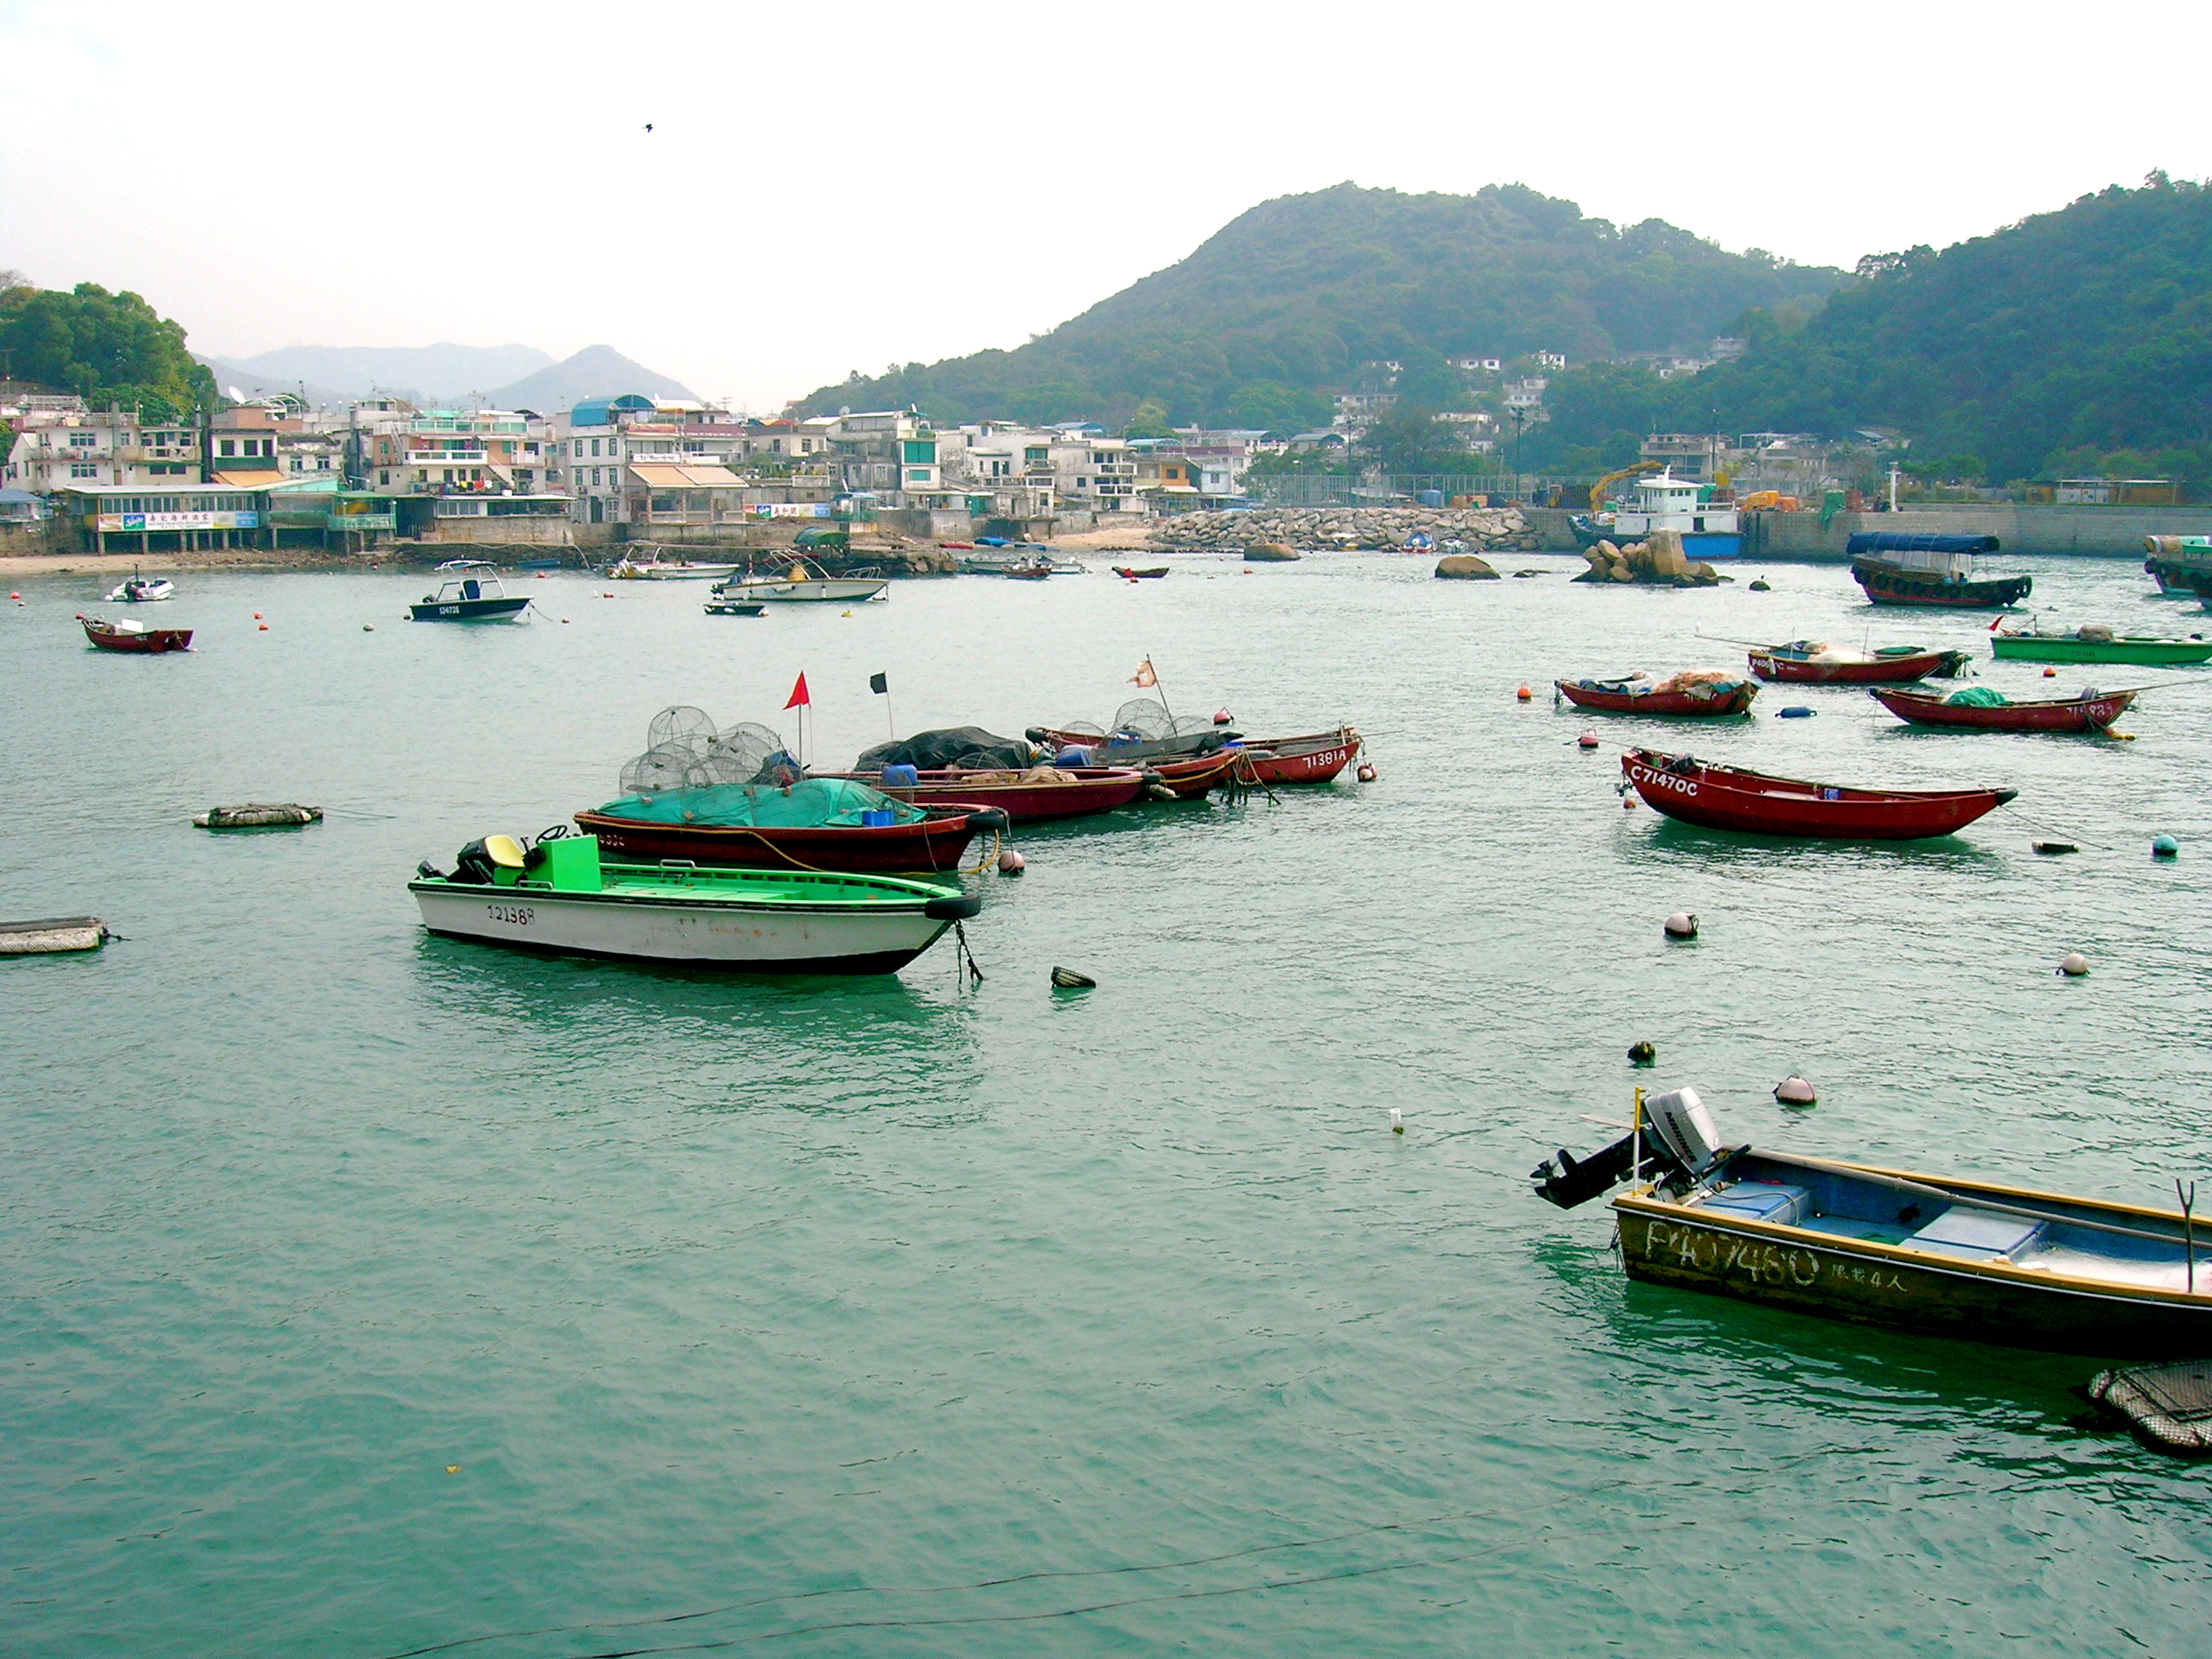 Yung_Shue_Wa_Bay_Boats_at_Lamma_Island%2C_HK.JPG